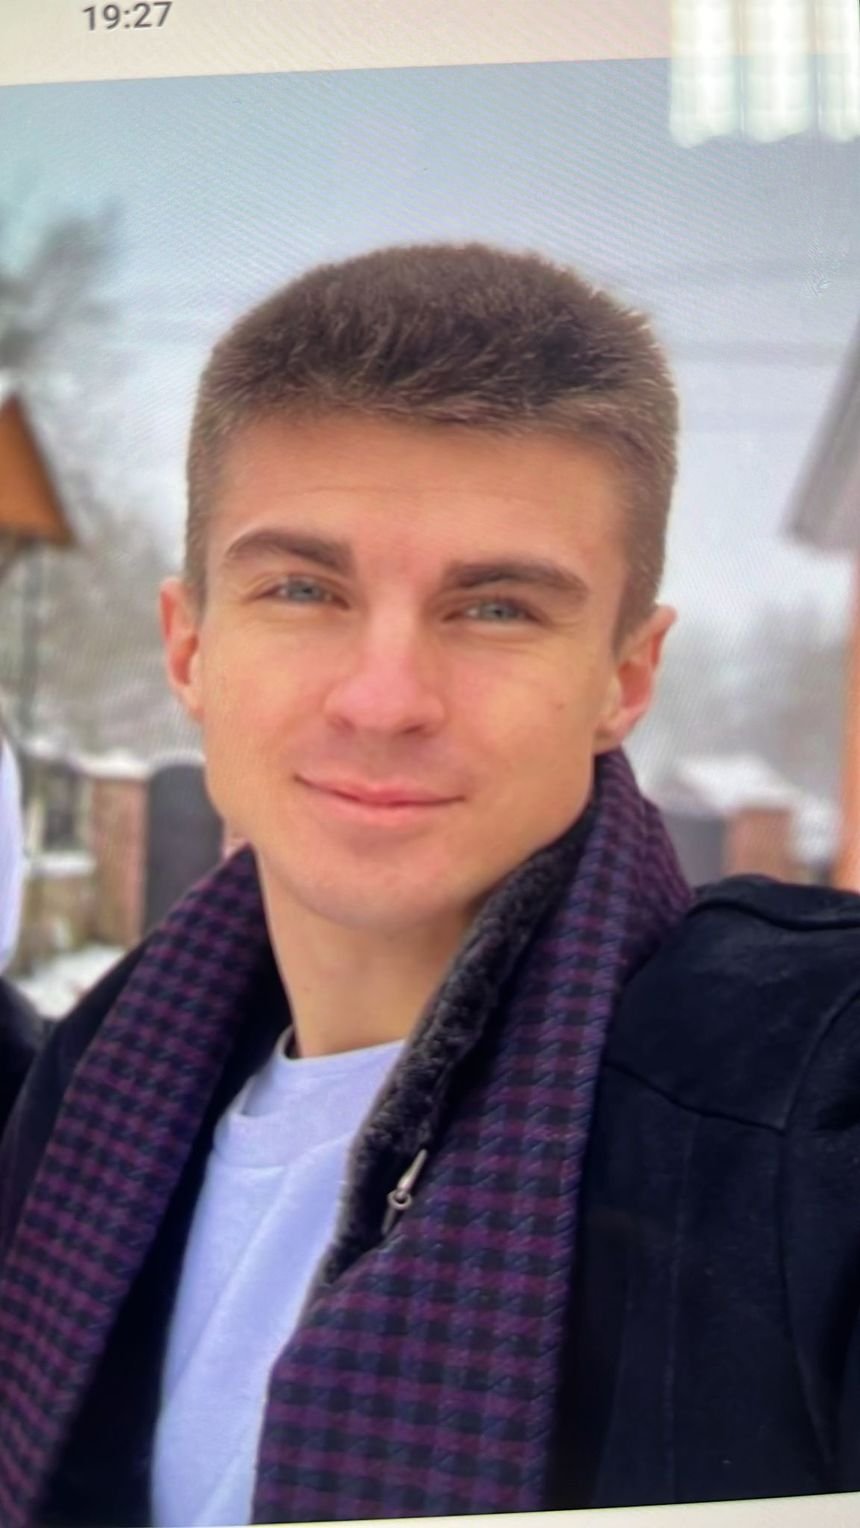  Maramureş: Tânăr ucrainean, dispărut de o lună, după ce a anunţat că trece Tisa înot, către România